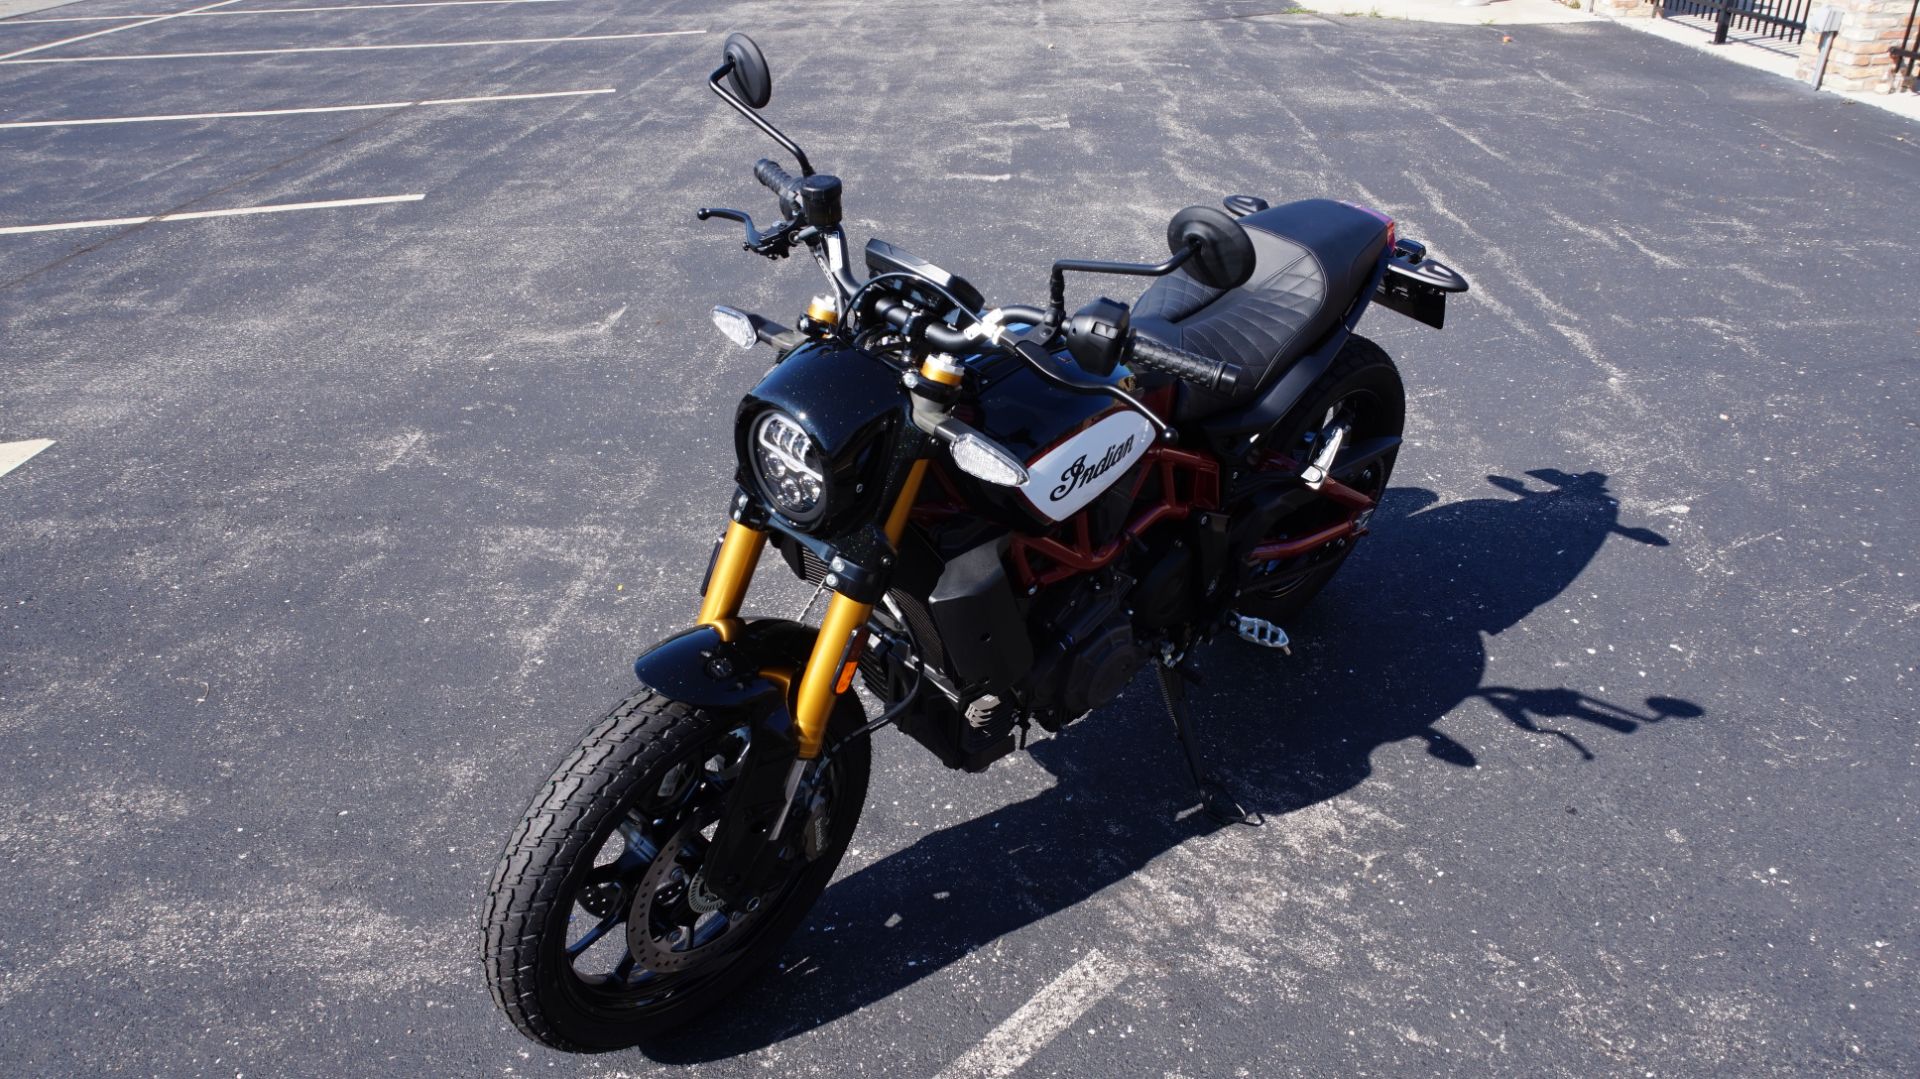 2019 Indian Motorcycle FTR™ 1200 S in Racine, Wisconsin - Photo 7